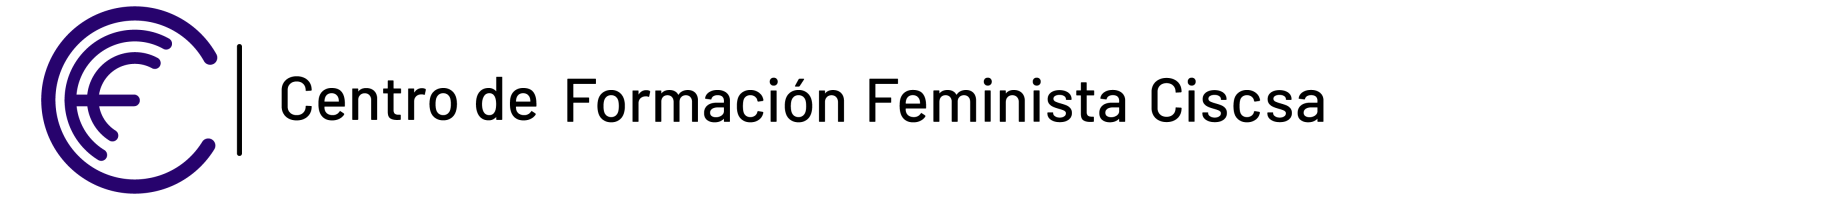 Centro de Formación Feminista CISCSA